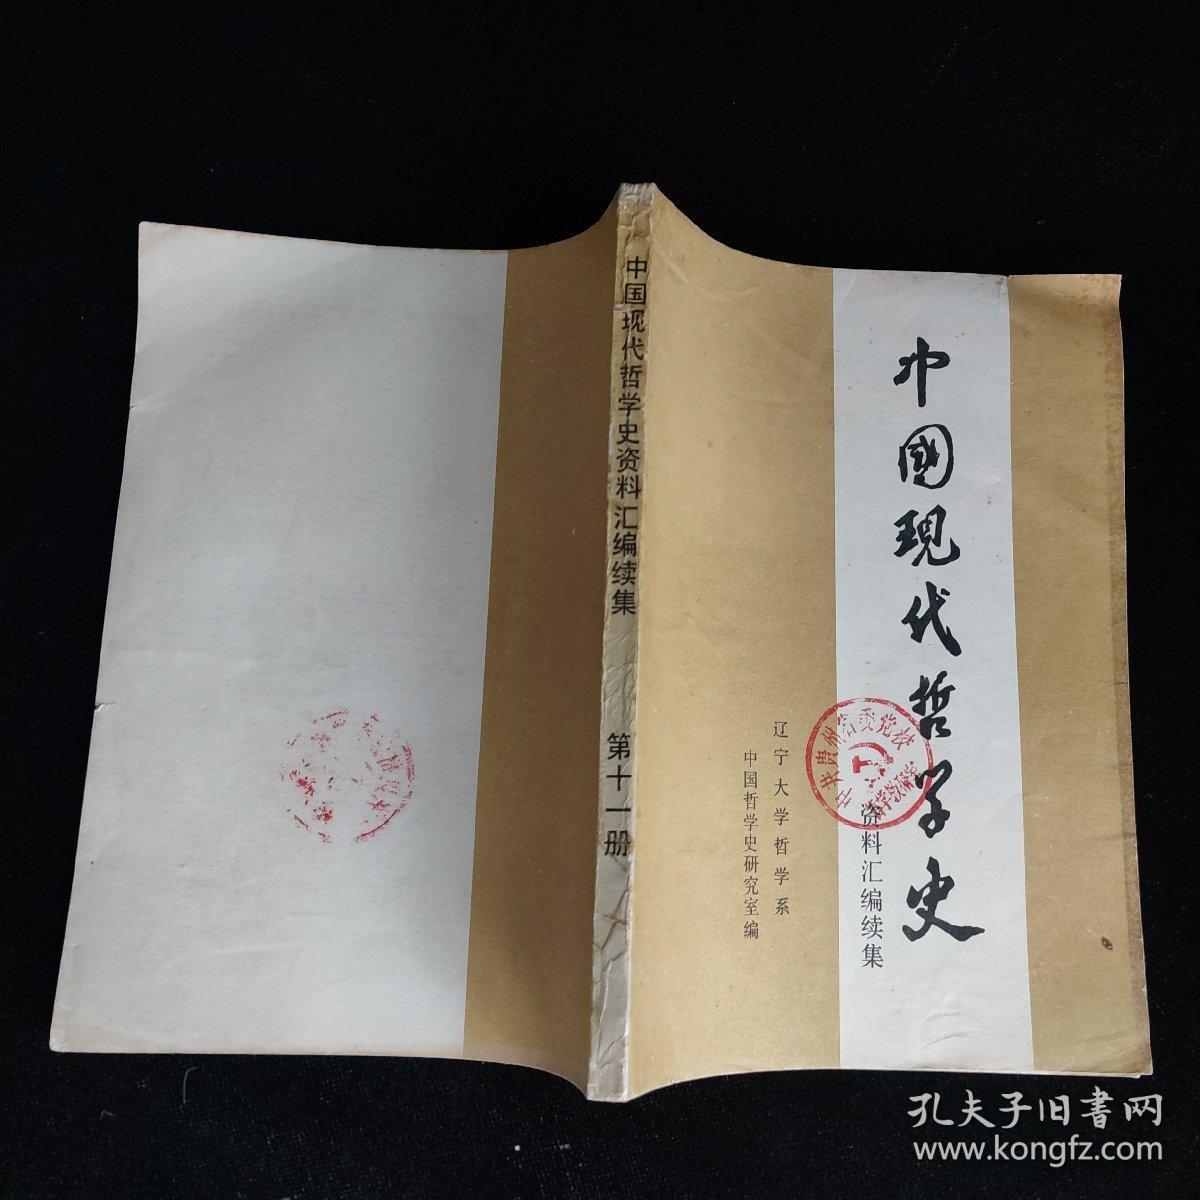 中国现代哲学史资料汇编续集 第十一册